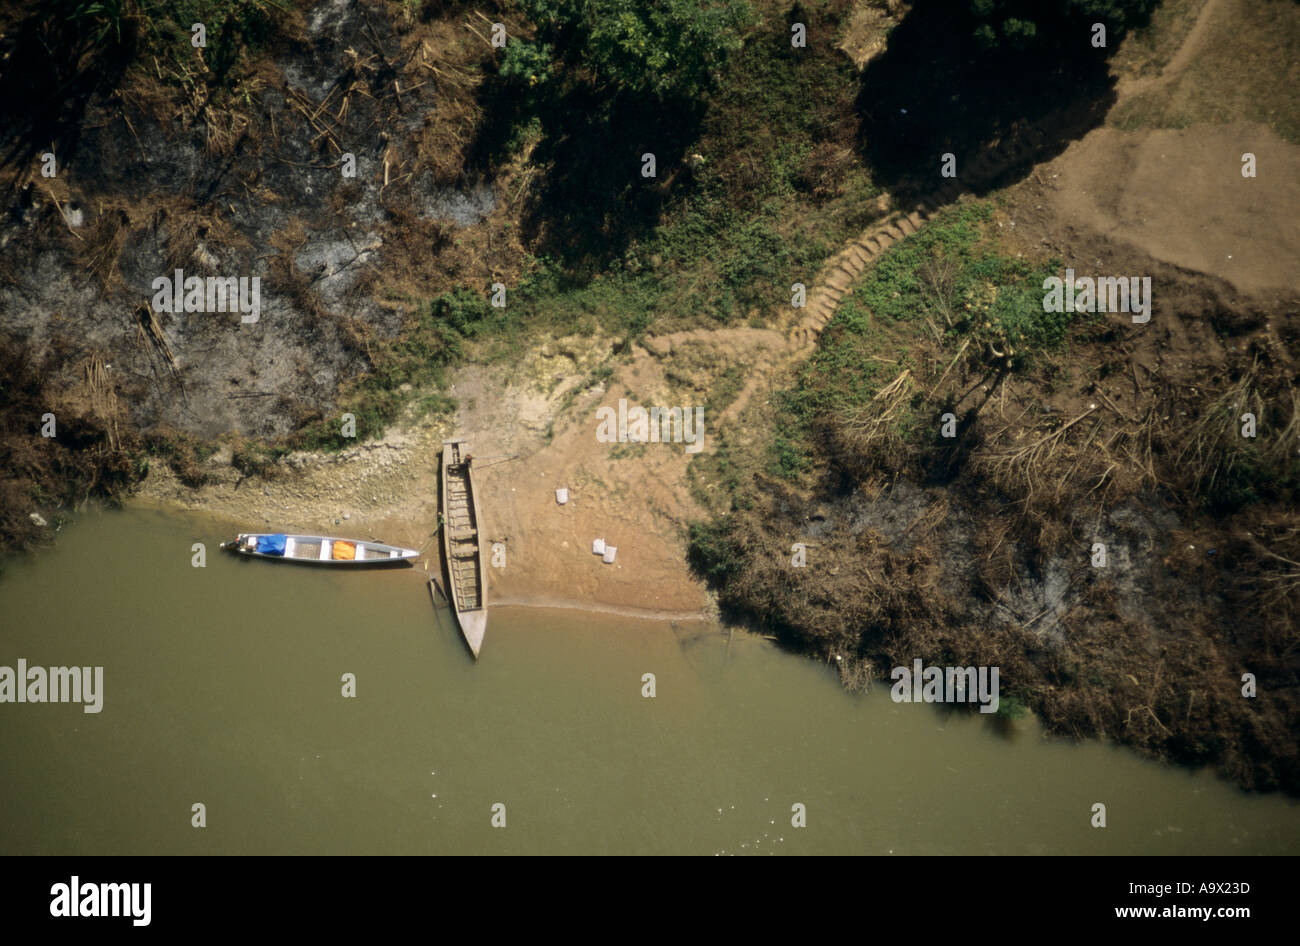 Villaggio Bacaja, Brasile. Vista aerea del fiume accesso con due barche e passaggi; Xicrin tribù indiana, Amazon. Foto Stock